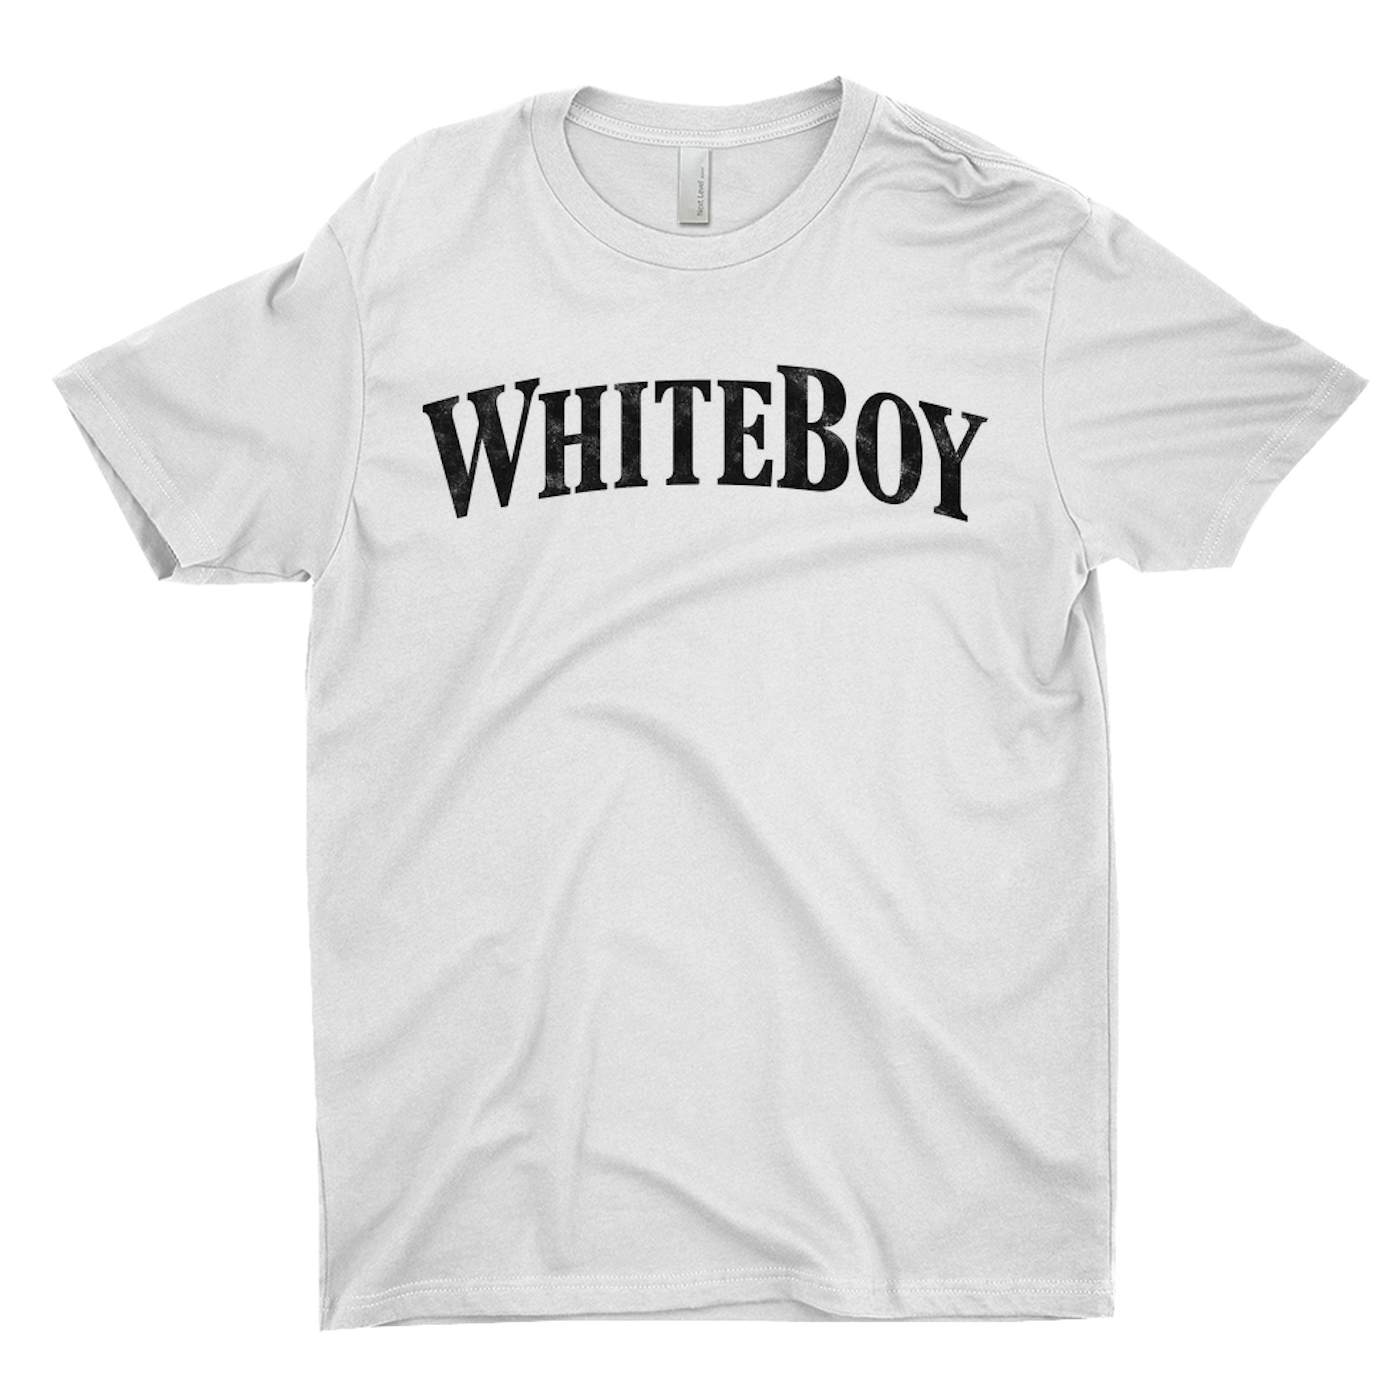 Mötley Crüe T-Shirt | White Boy Worn By Tommy Lee Mötley Crüe Shirt